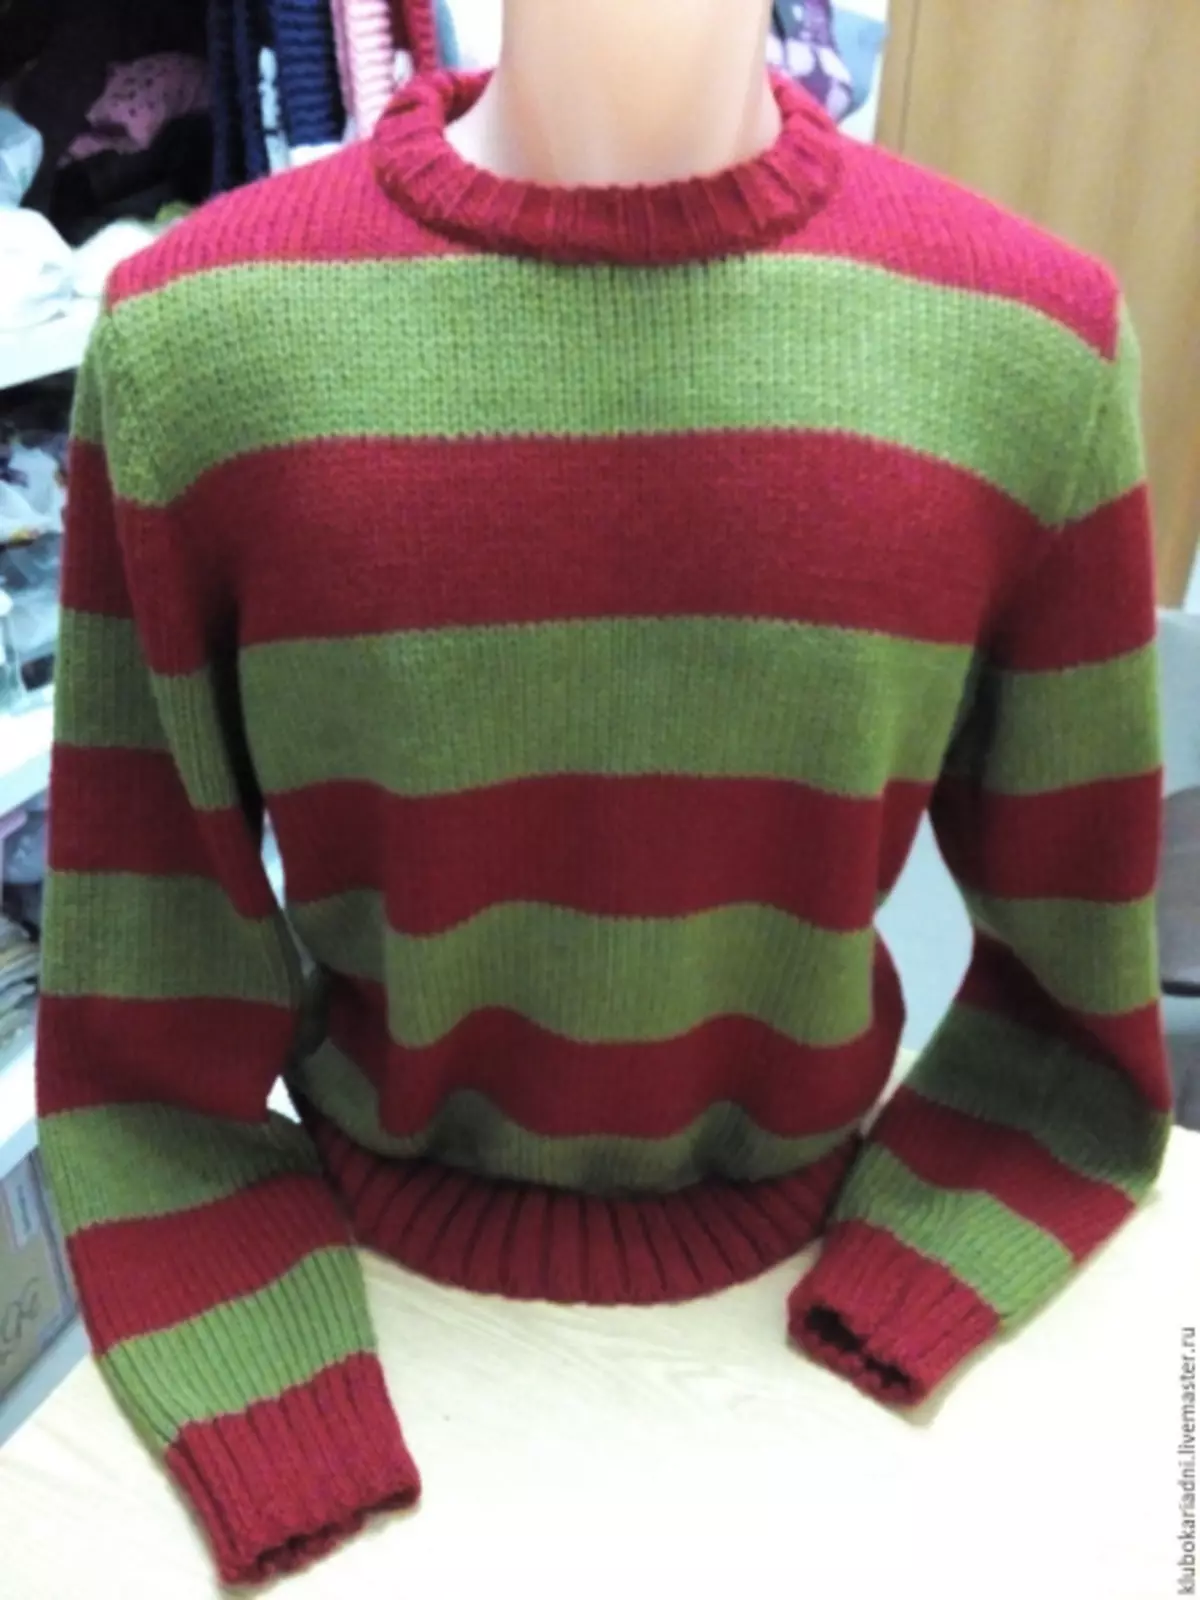 Freddie Kruger Sweater: Mpango na picha na video.